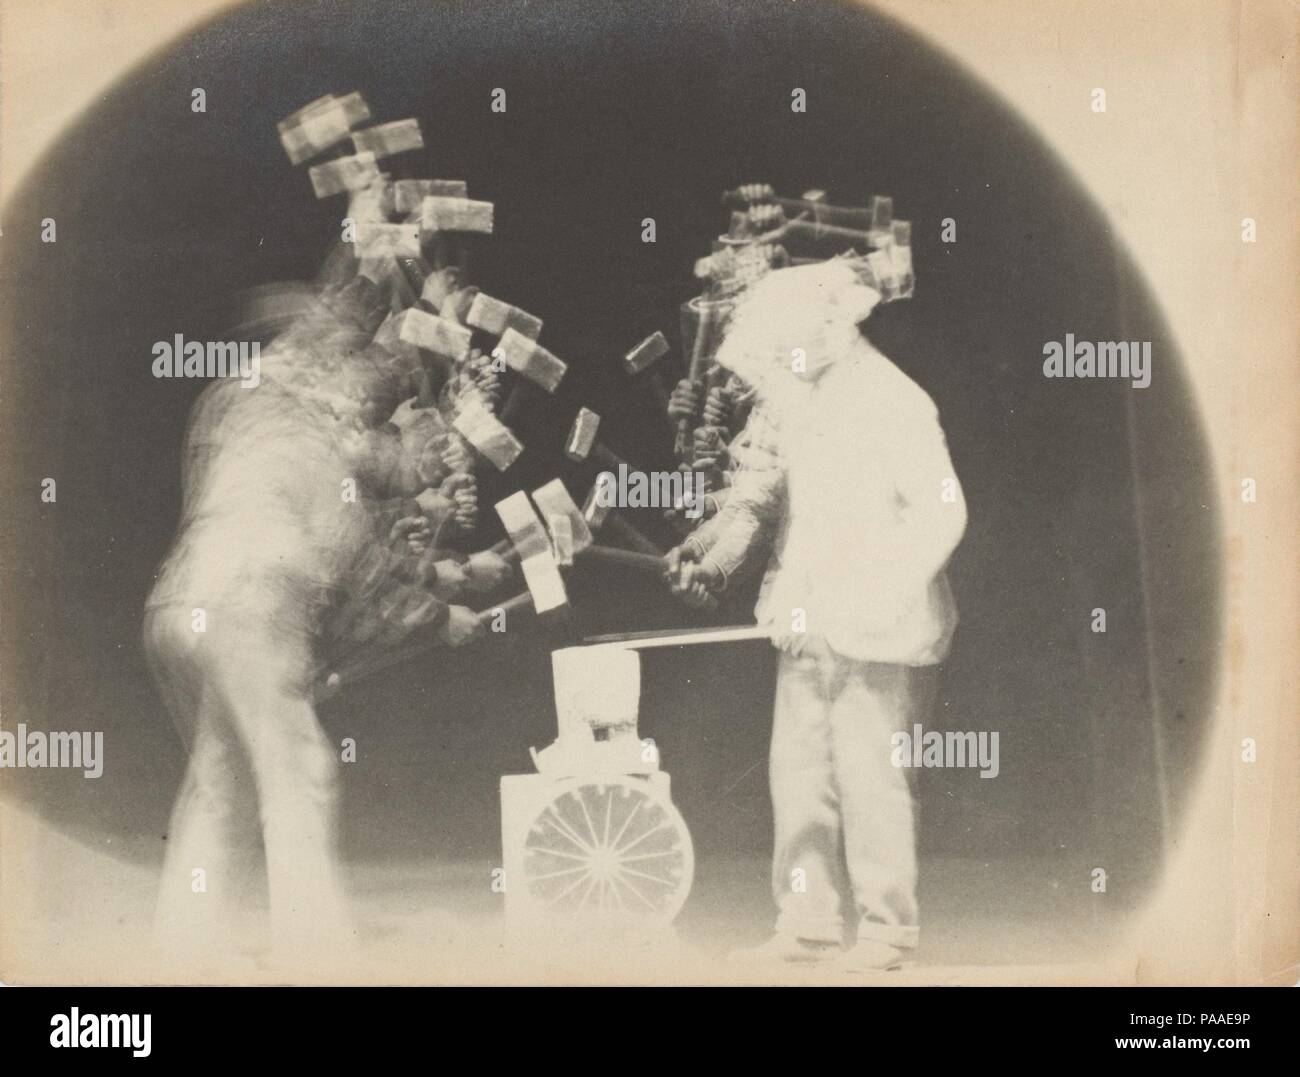 Chronophotograph. Artista: Etienne-Jules Marey (Francese, 1830-1904); Charles Fremont (Francese, 1855-1930). Dimensioni: 16,3 x 20,2 cm (6 7/16 x 7 15/16 in.). Data: 1894. A differenza del motion studies di Eadweard Muybridge, che hanno illustrato il movimento come una serie di distinti momenti di separare, sequenziale di negativi, Marey le analisi di movimento sono caratterizzati da esposizioni multiple su una singola lastra fotografica. In questa fotografia, Charles Fremont, un ingegnere civile che hanno assistito Marey nel suo laboratorio, Marey utilizzato il metodo per studiare i fabbri all'incudine; la sintesi dinamica dei loro colpi arcuate trac Foto Stock